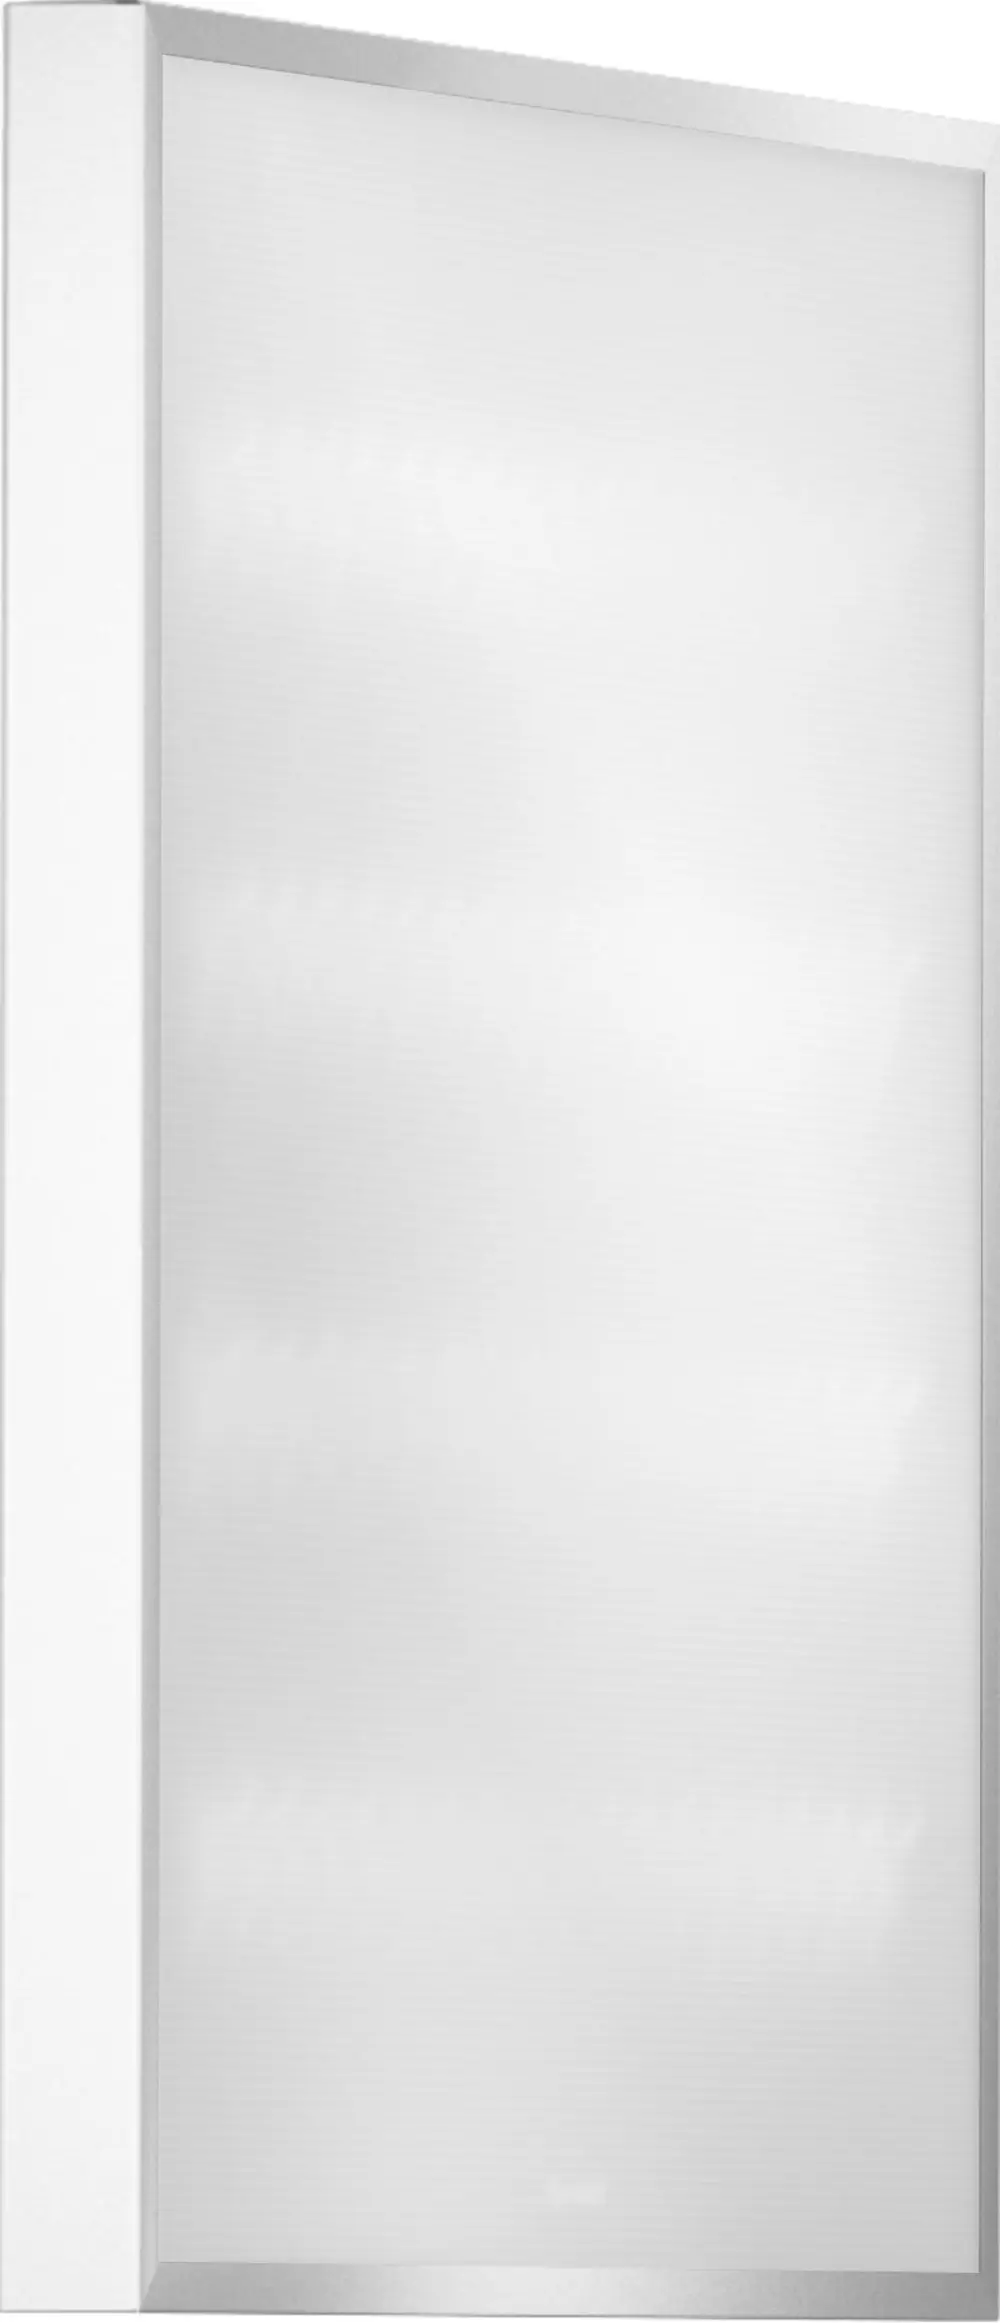 Автономный Офис Standart 595×595×40 40Вт 5000К Матовое закаленное стекло БАП Em3